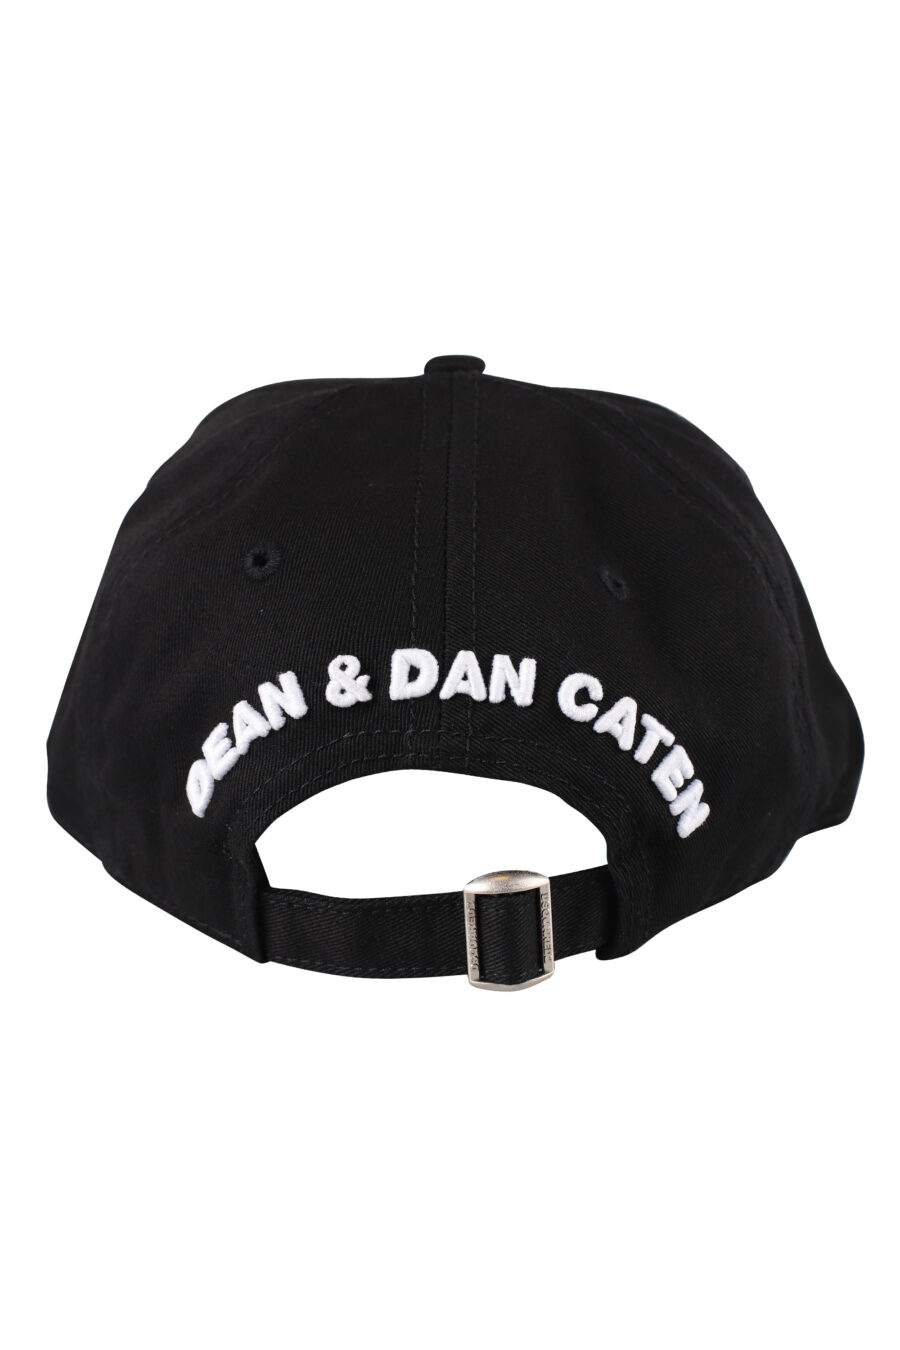 Gorra negra con logo blanco bordado - IMG 1240